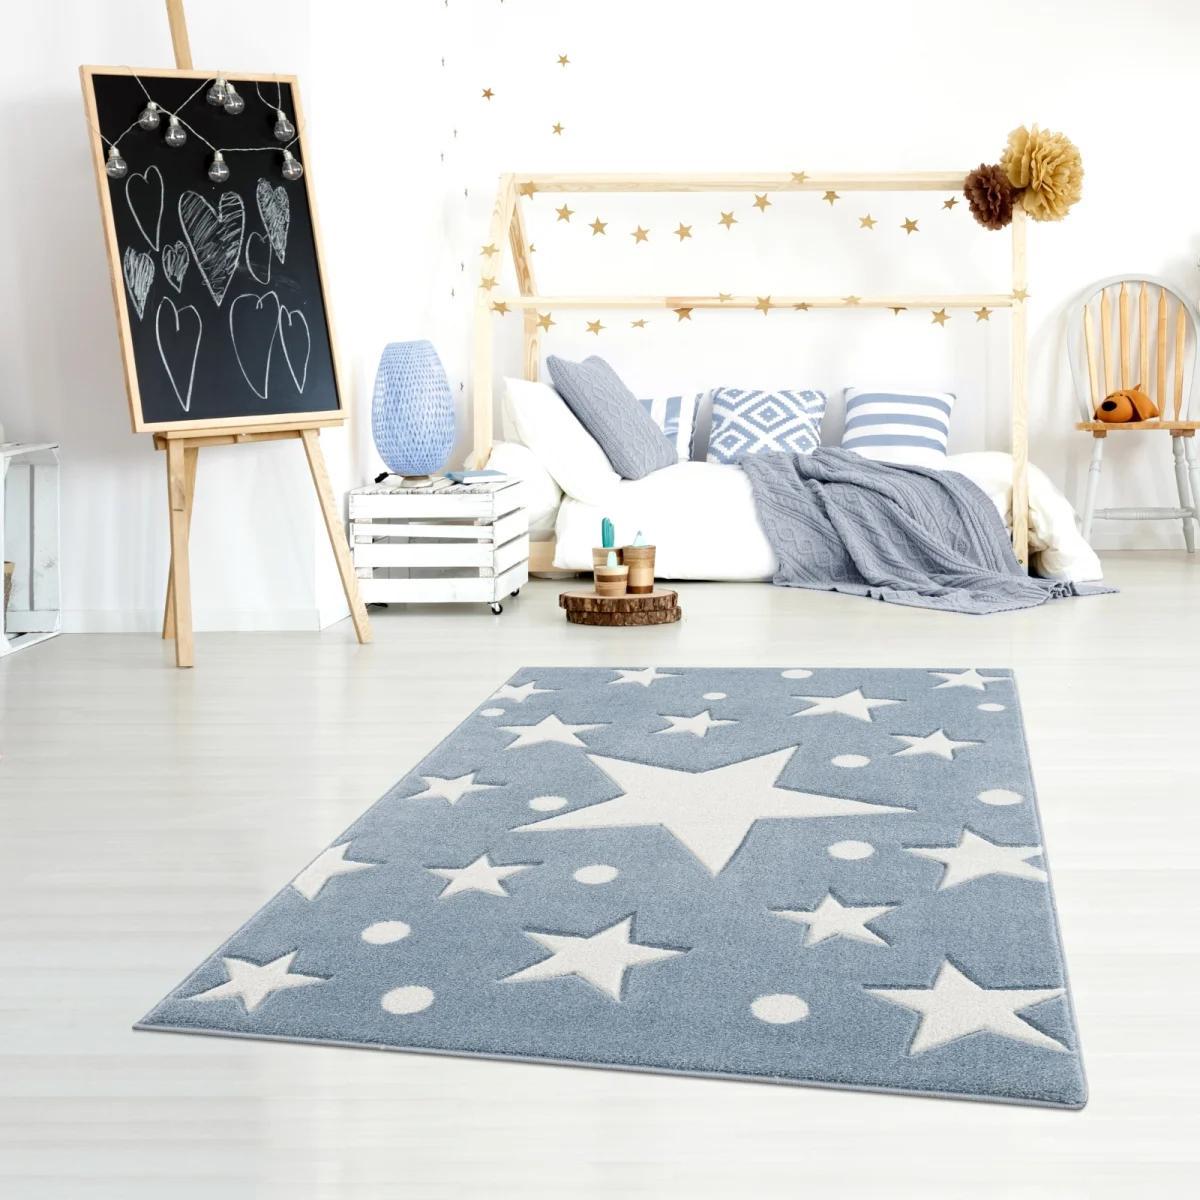 Dywan dziecięcy Estrella Blue 100x160 cm do pokoju dziecięcego niebieski w gwiazdy nr. 1